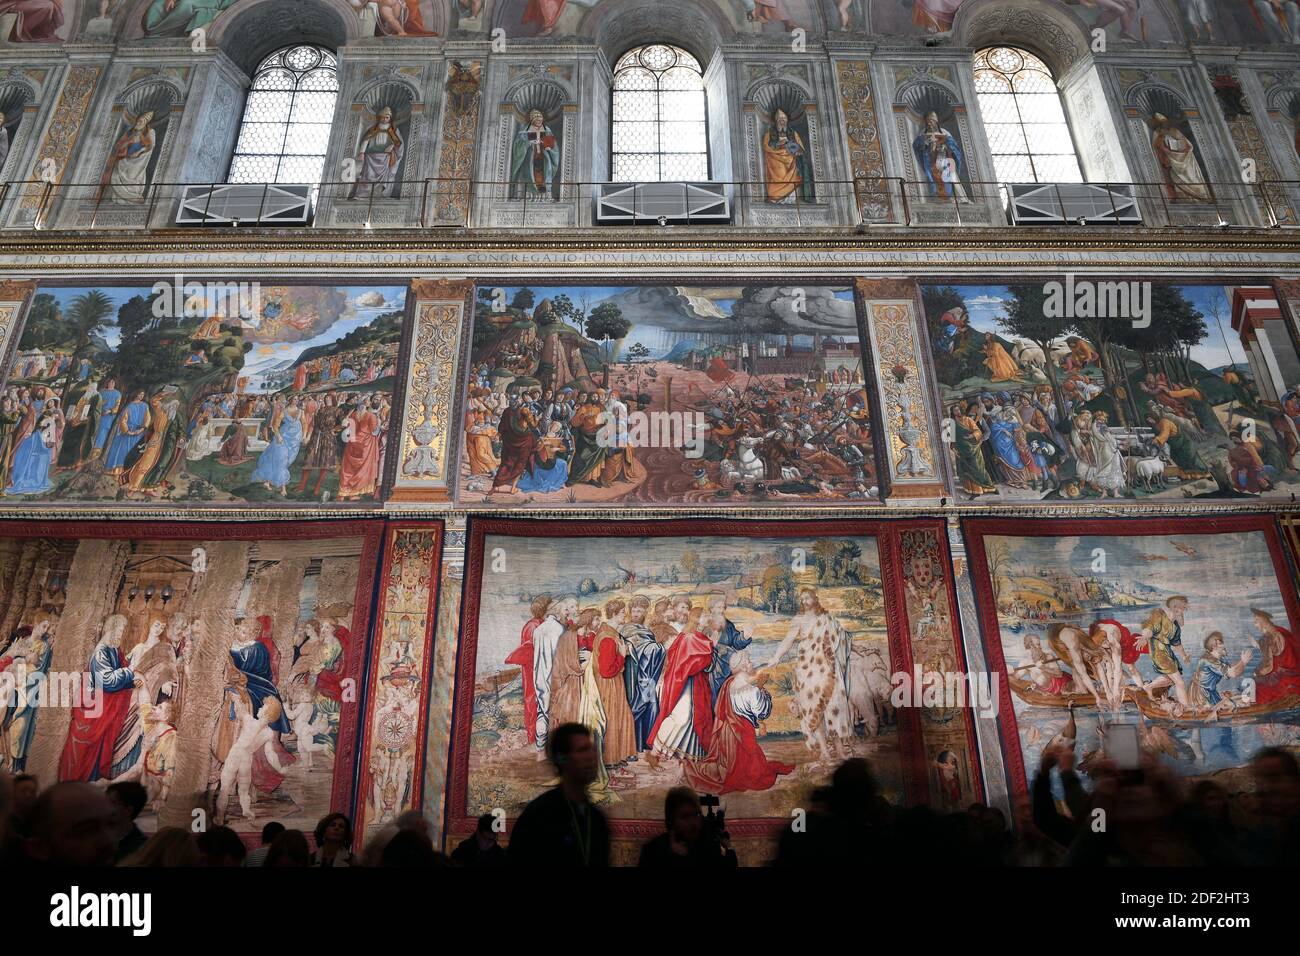 Per una settimana i grandi arazzi disegnati da Raffaello tornarono alla  Cappella Sistina il 17 febbraio 2020, quando il Vaticano celebra il 500°  anniversario della morte del maestro dell'Alto Rinascimento. Da sinistra